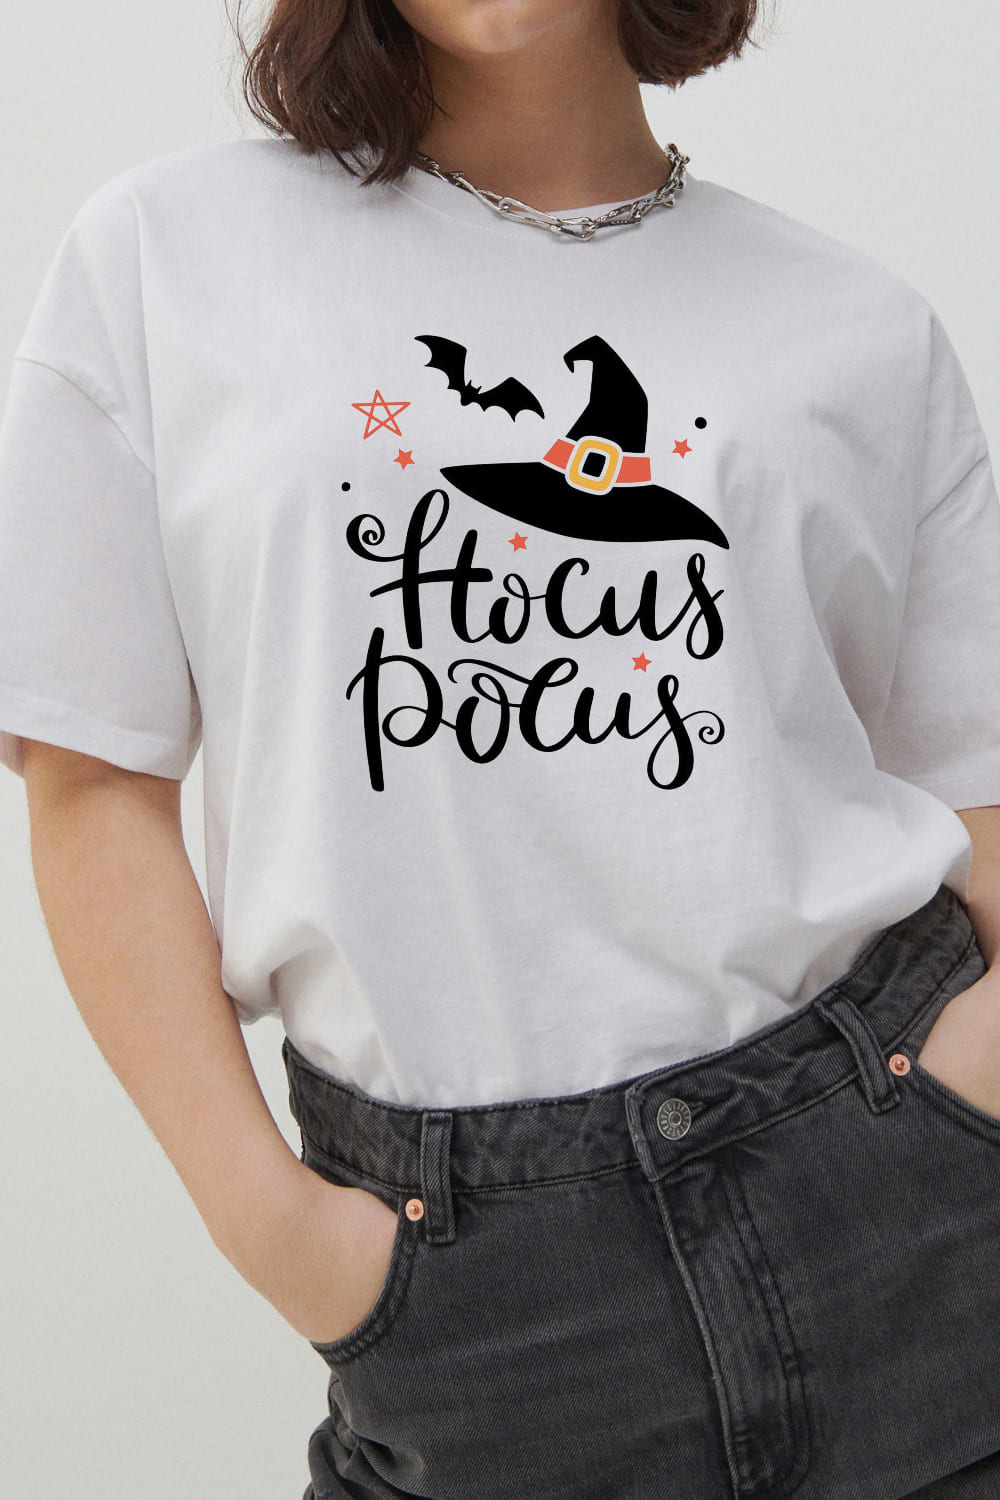 hocus pocus cricut 05